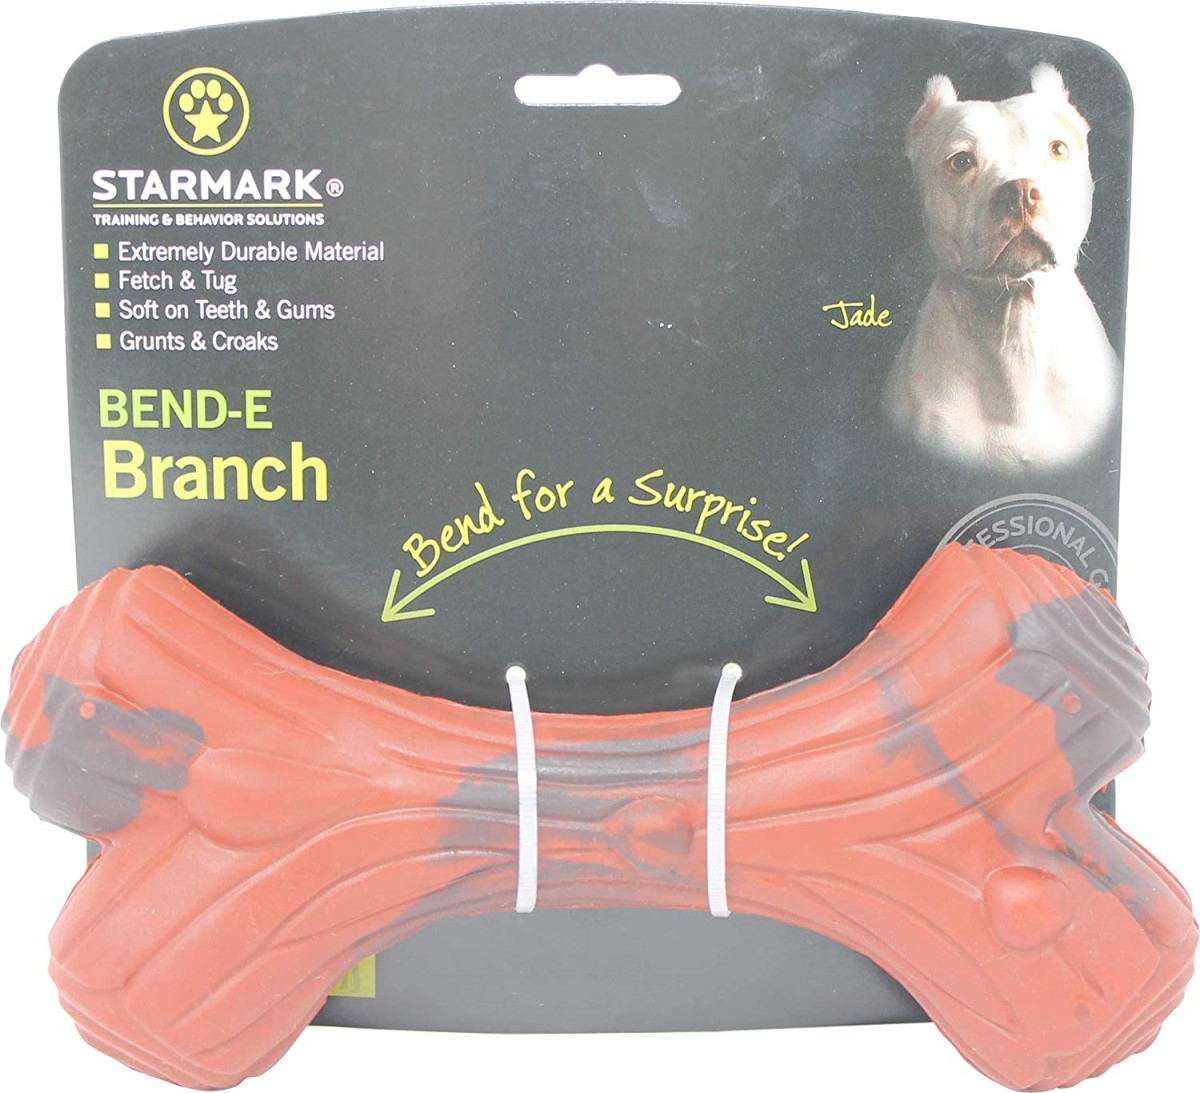 Starmark Bend-E Branch